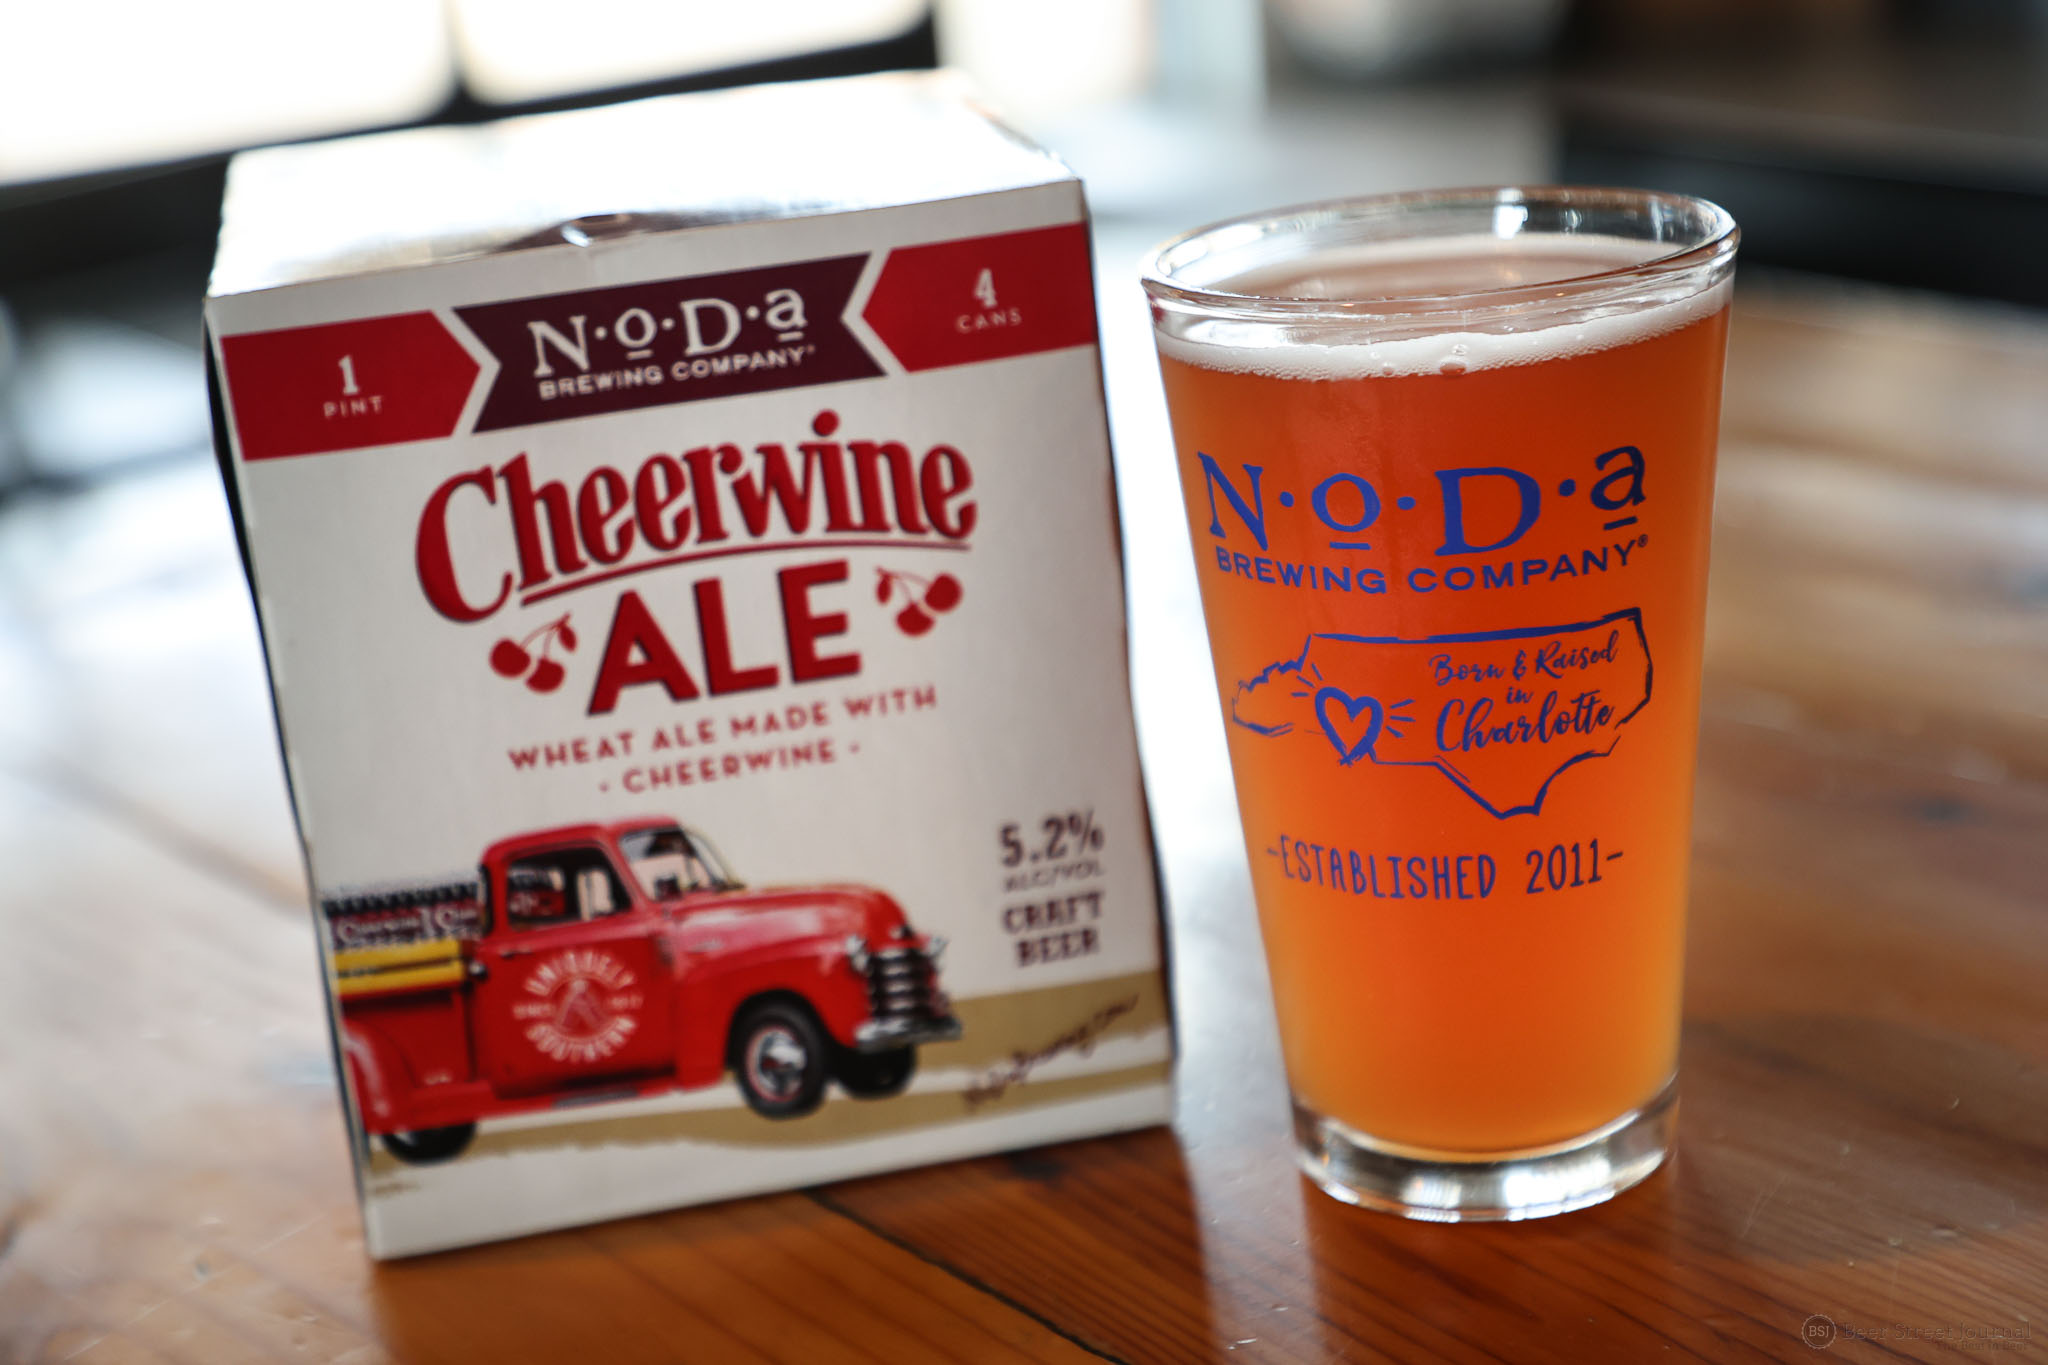 https://beerstreetjournal.com/wp-content/gallery/noda-cheerwine-ale-release/NoDa-Cheerwine-Ale-2.jpg